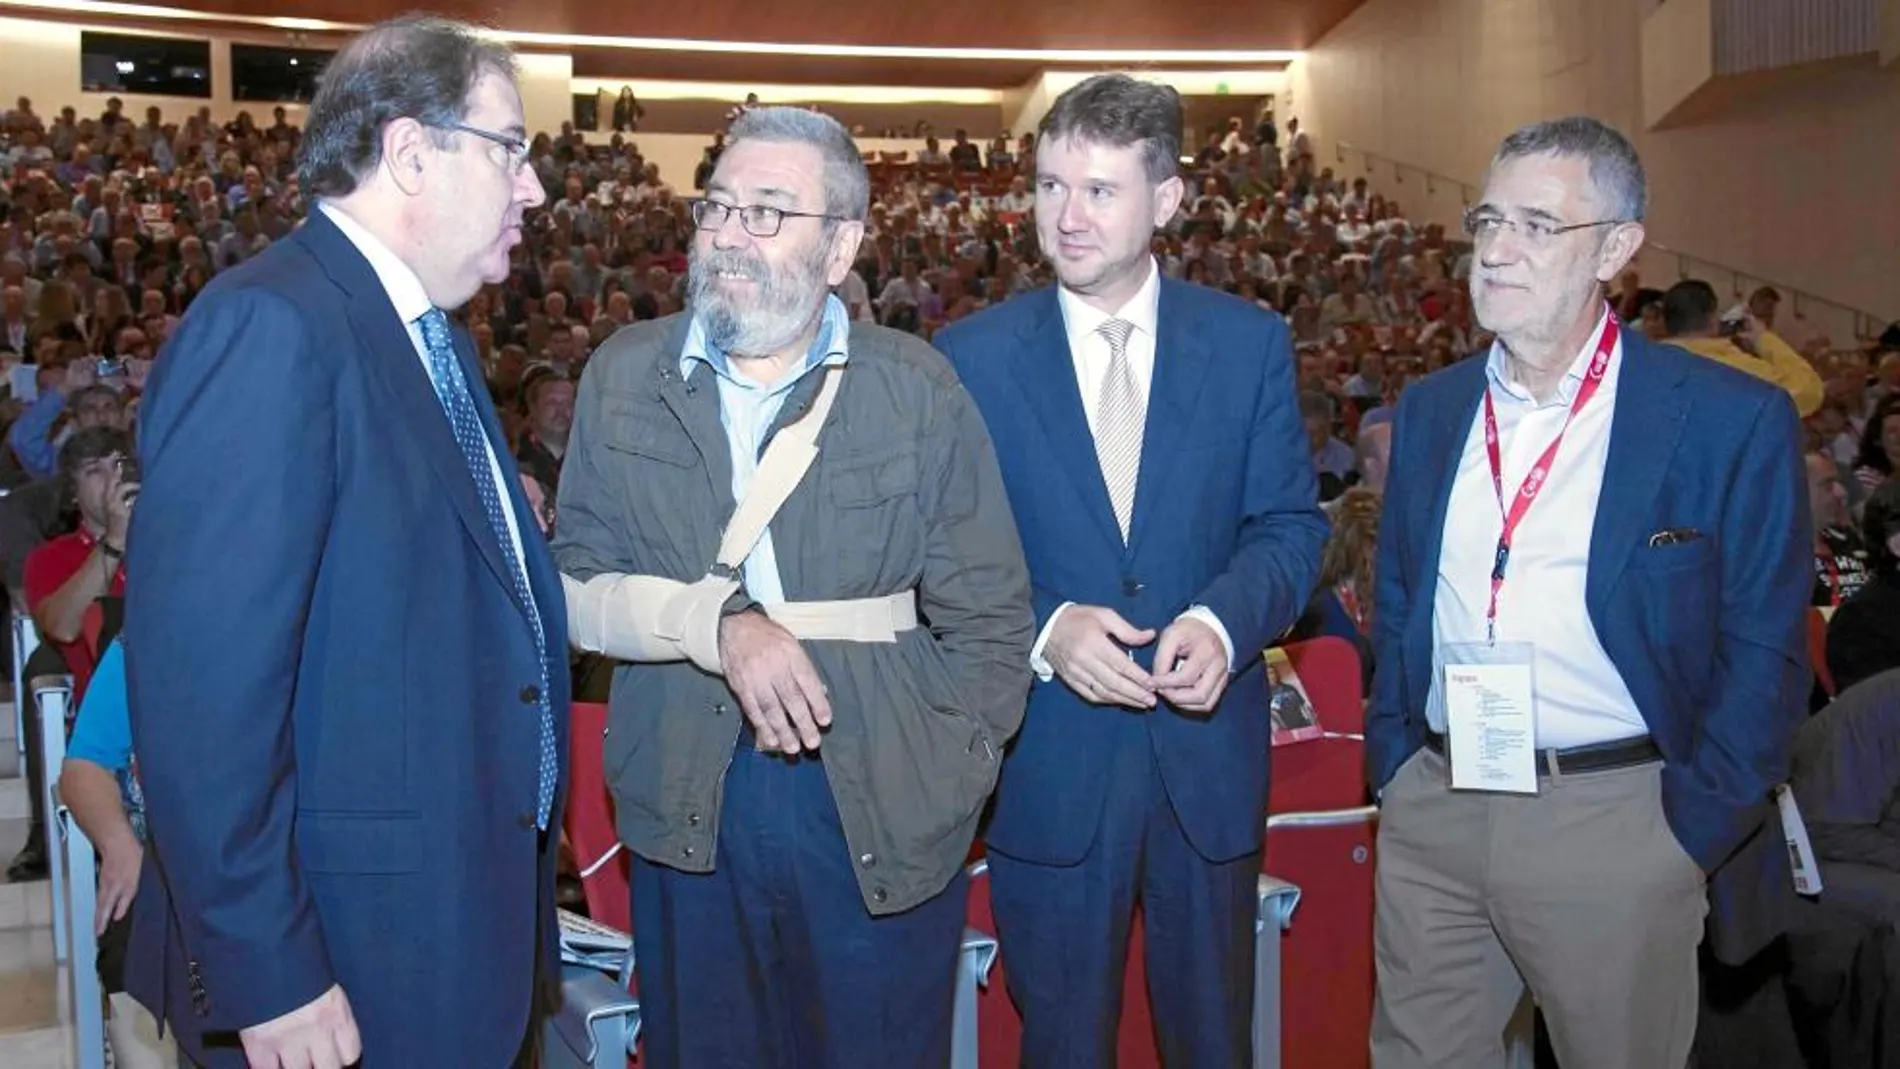 Juan Vicente Herrera dialoga con Cándido Méndez, Javier Lacalle y Agustín Prieto, en el encuentro de UGT celebrado en Burgos